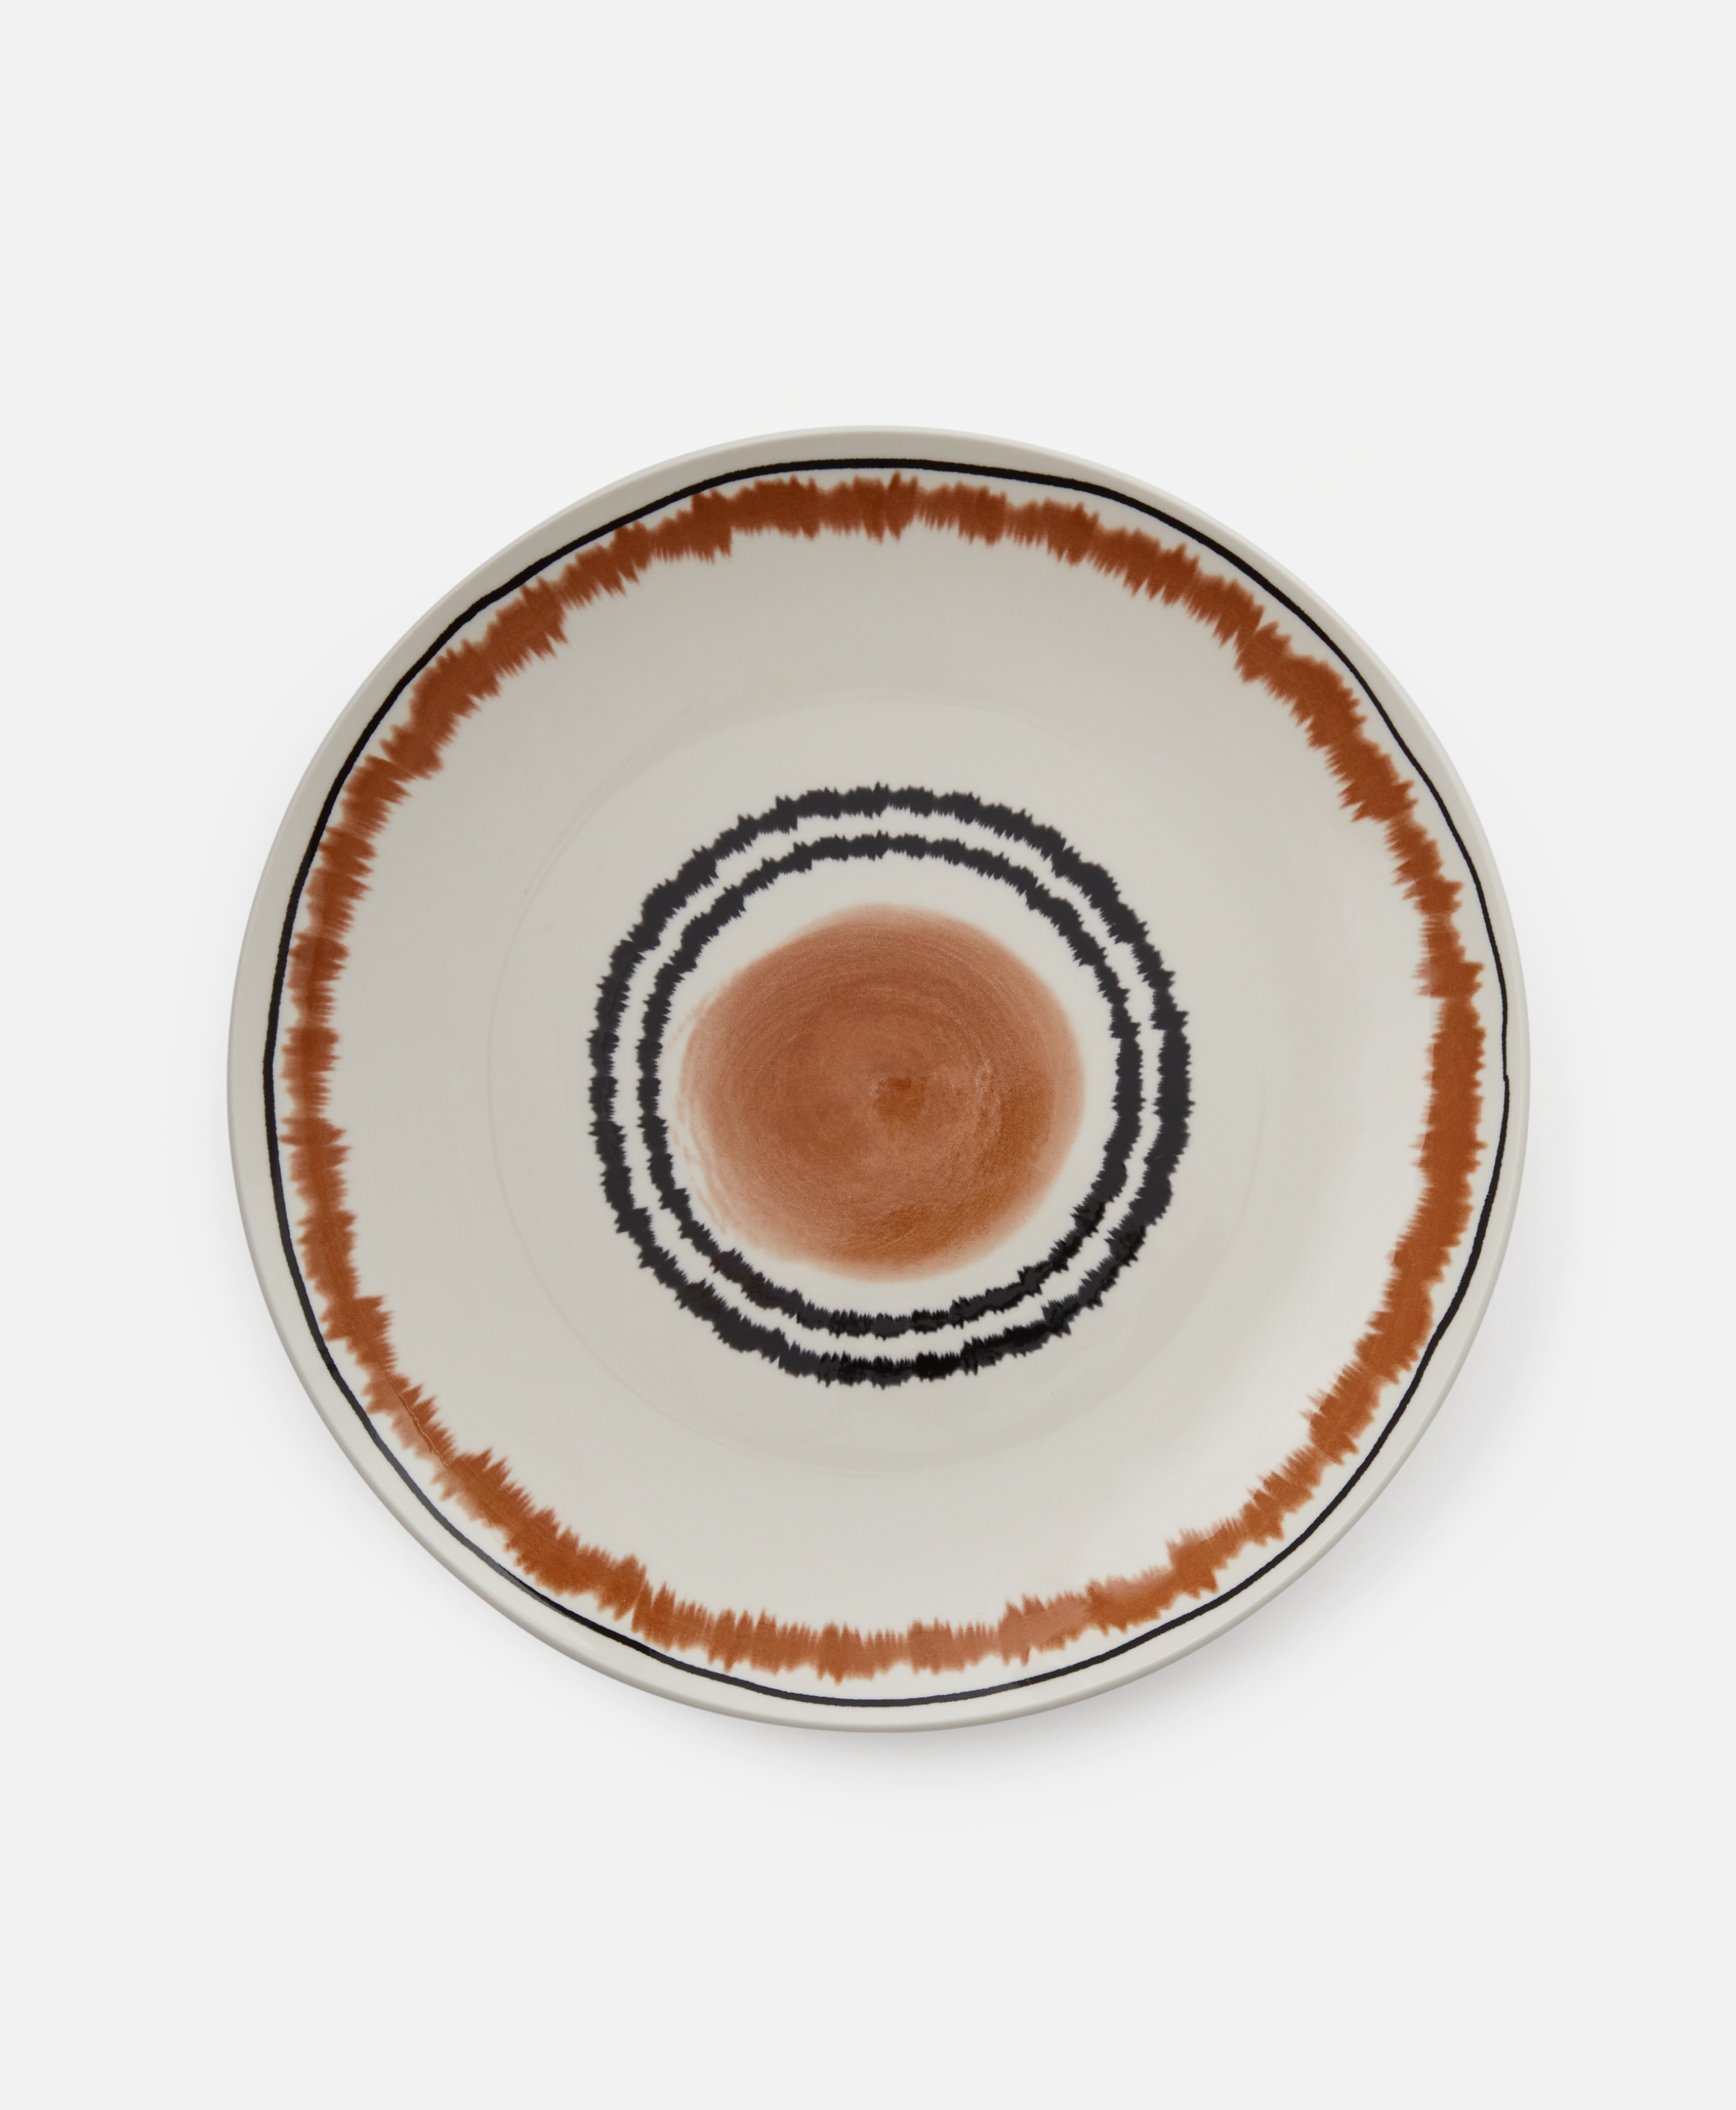 Keramikteller mit Muster, weiß, braun, Ø 26,5 cm